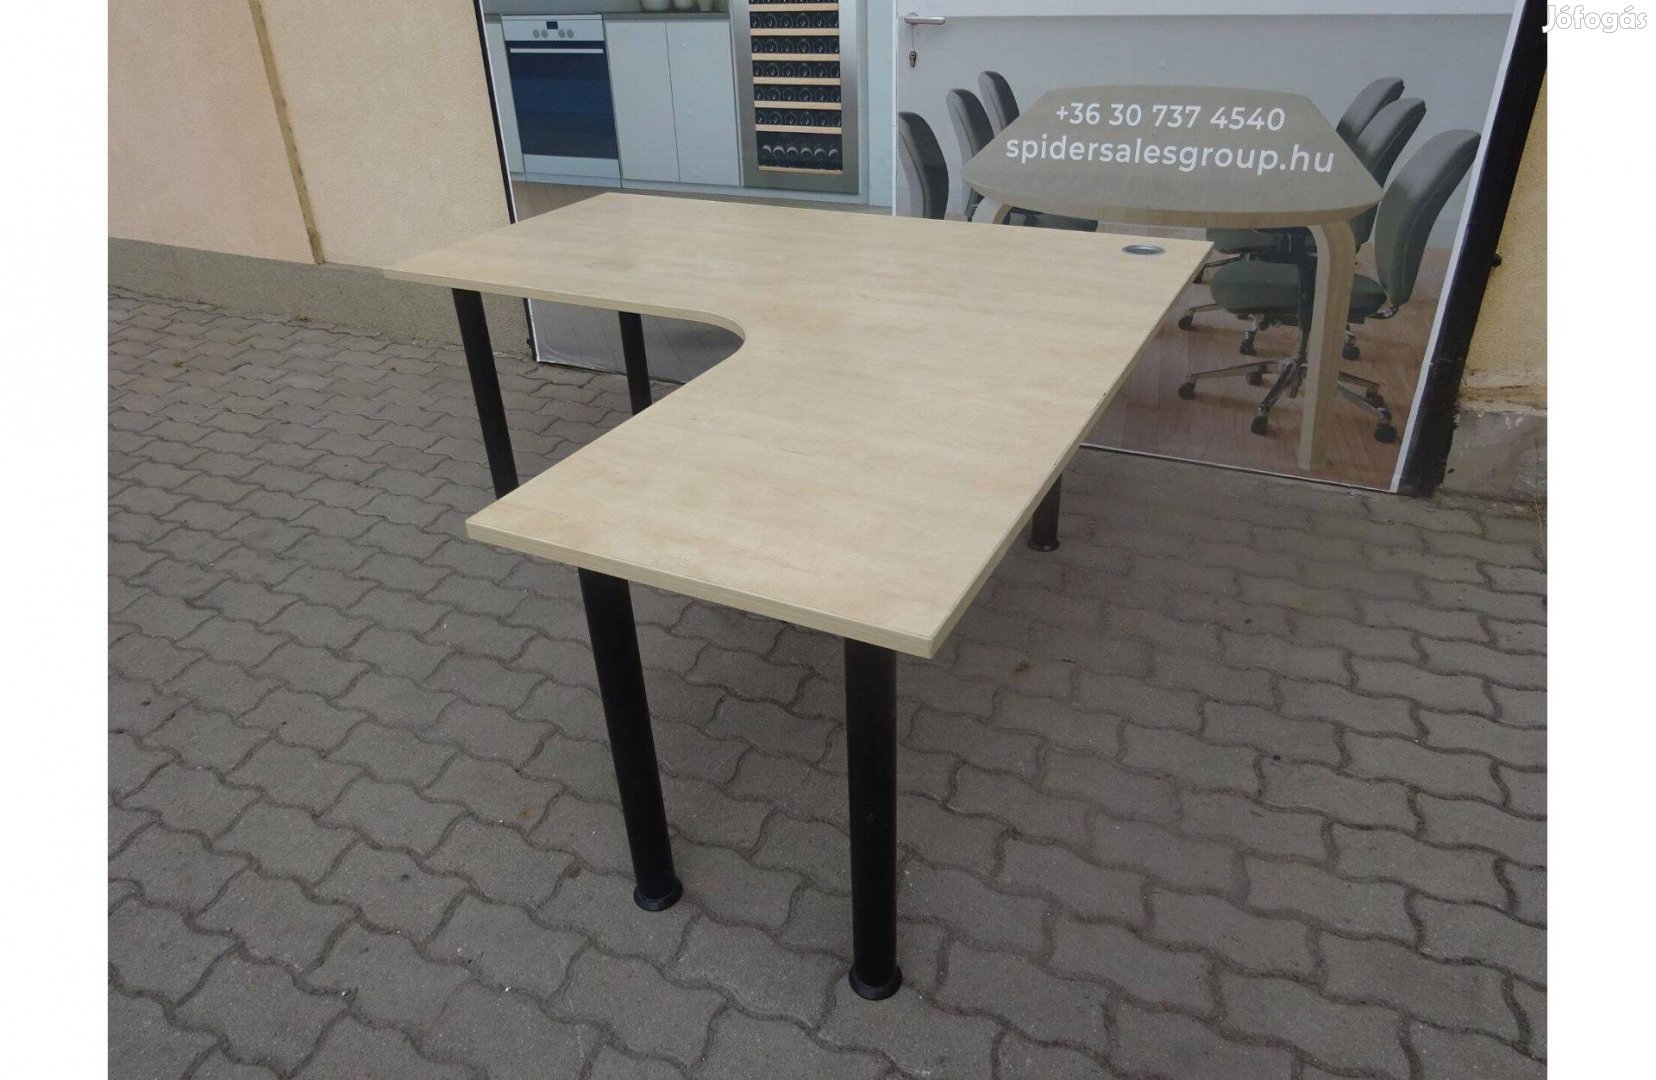 Steelcase sarokasztal, íróasztal, 160x160 cm, használt asztal